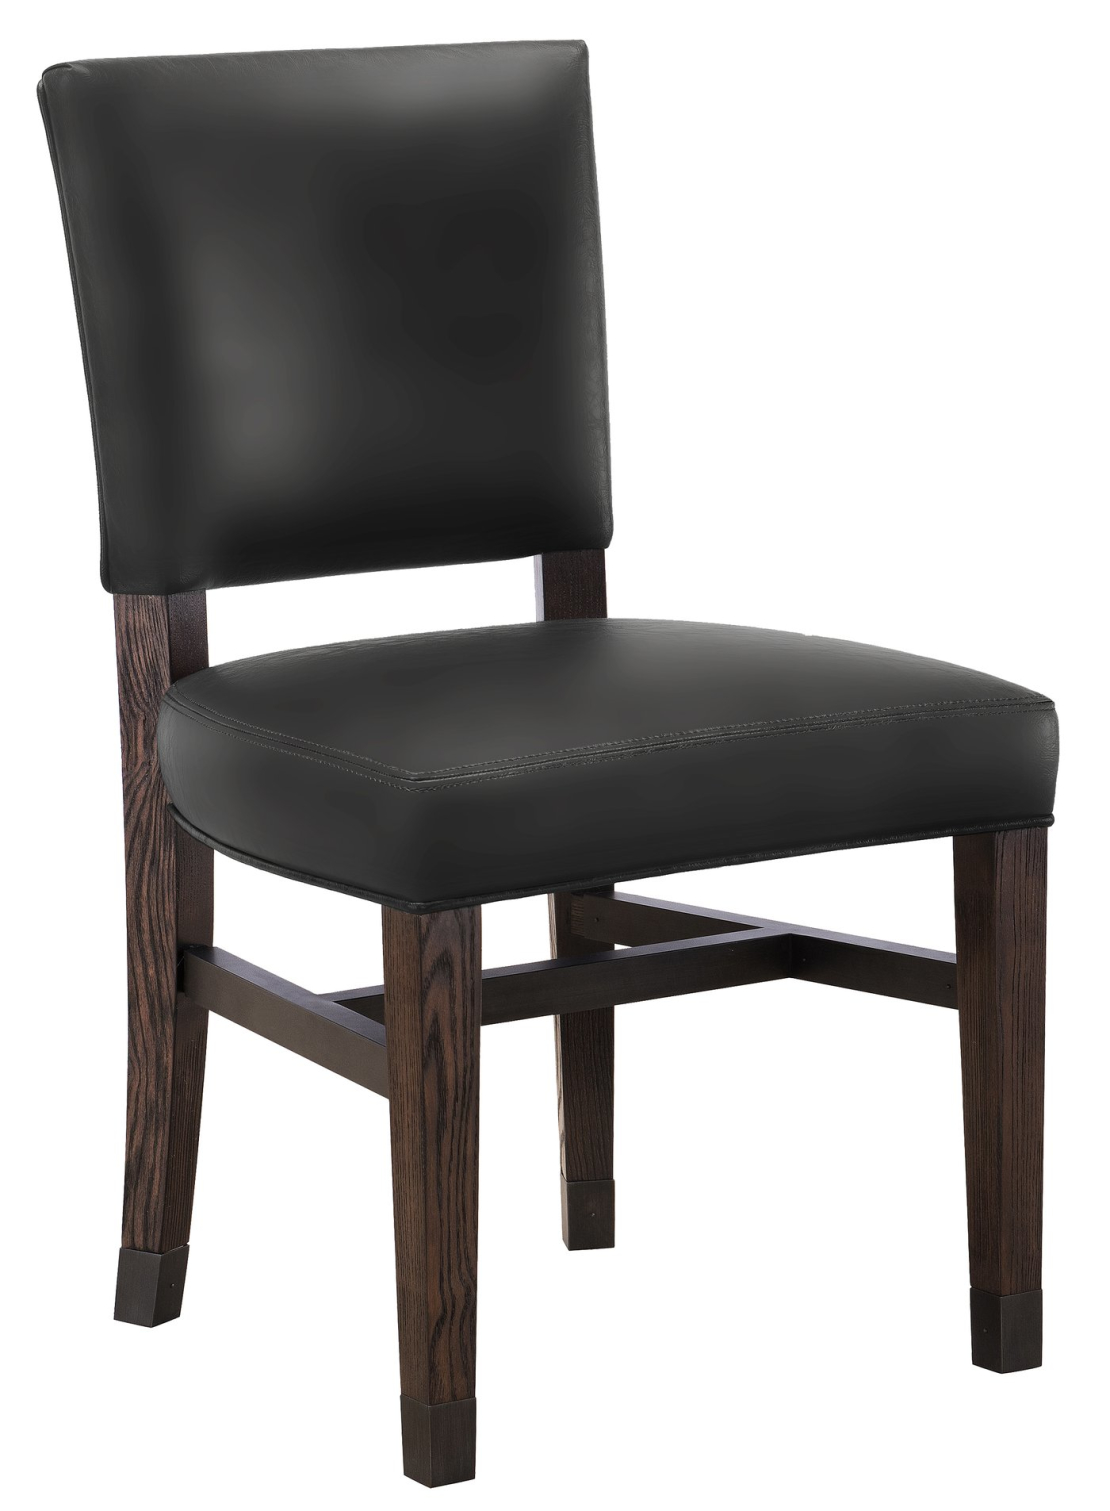 Legacy - כסא מפואר מדגם Heritage